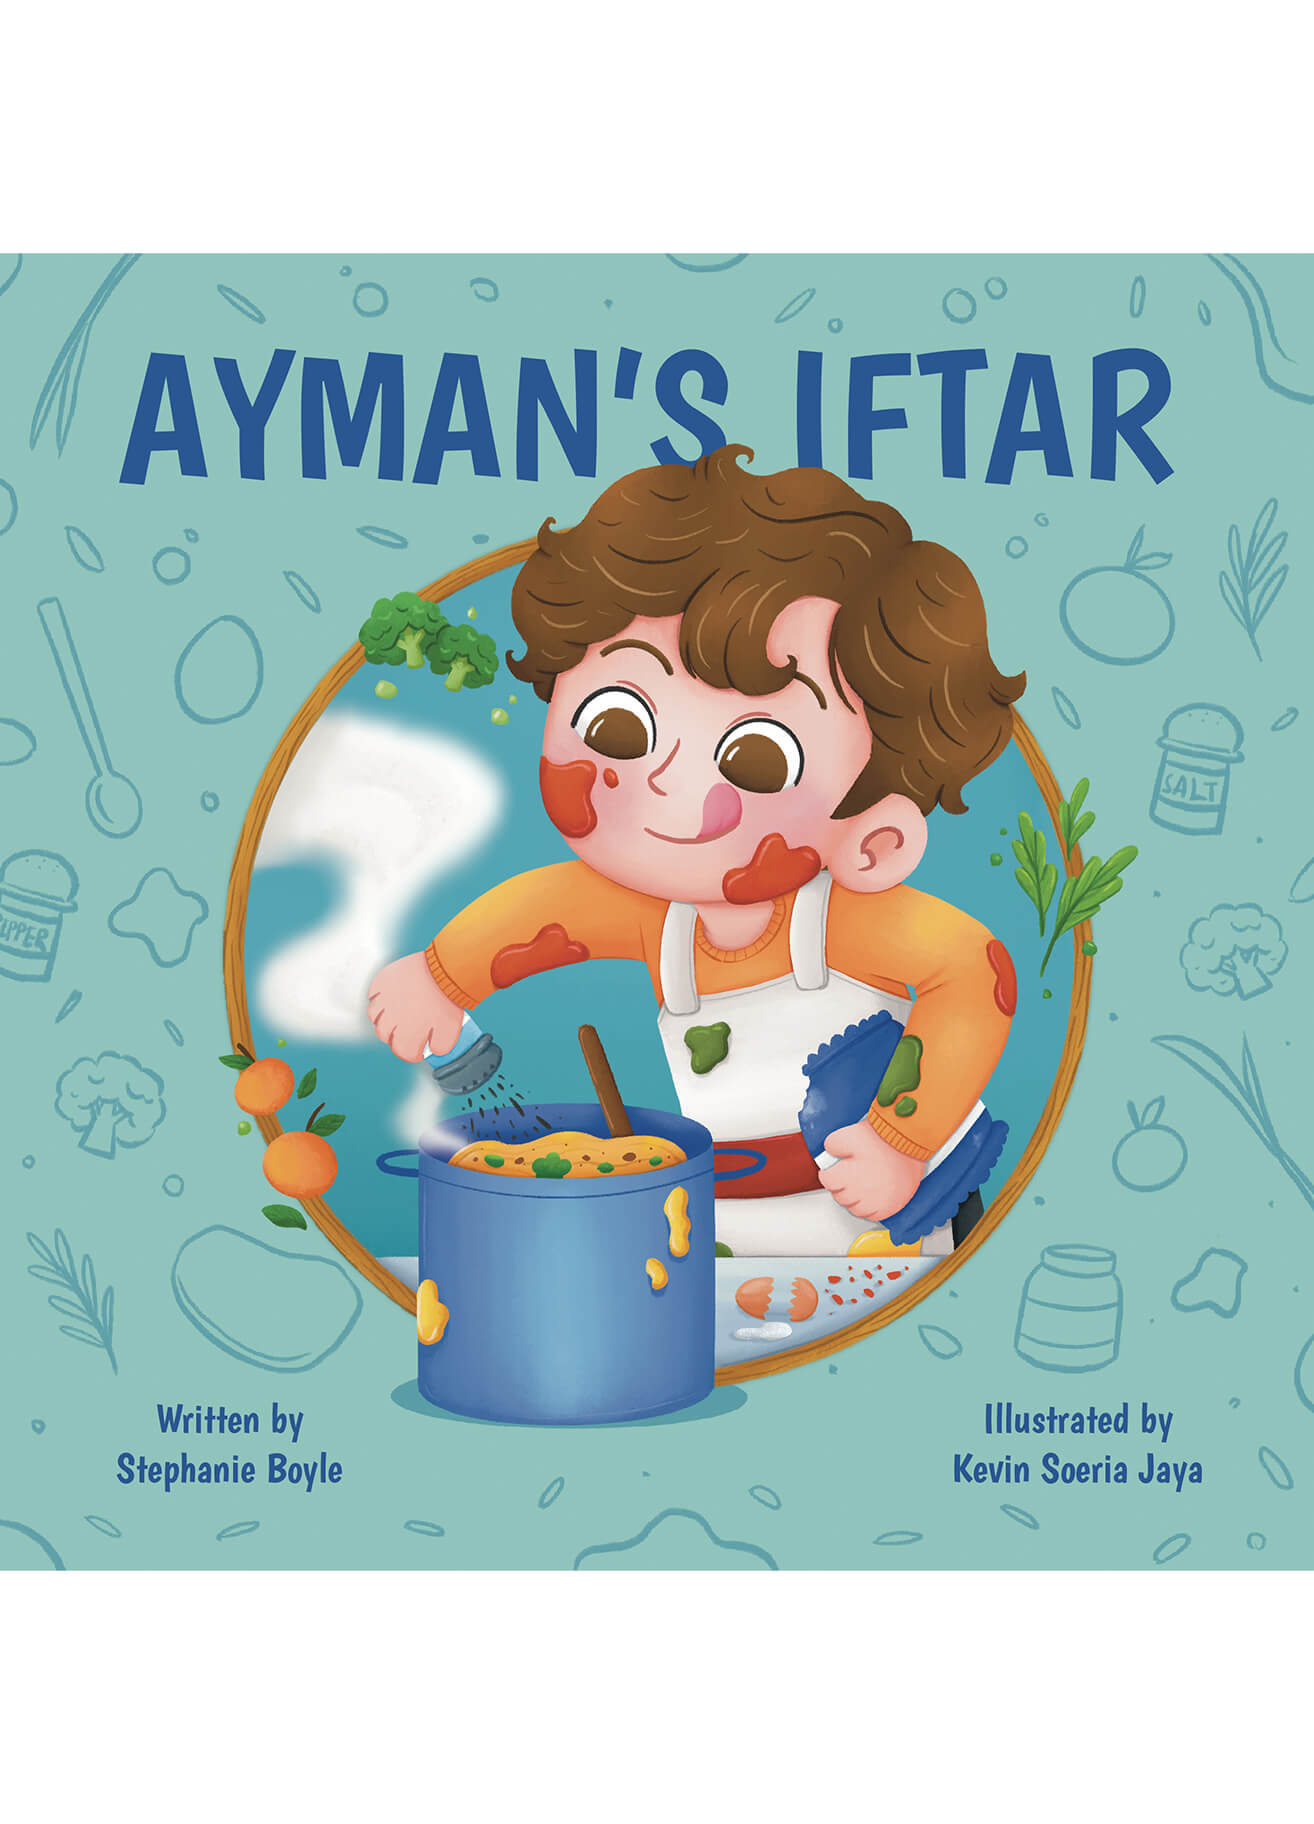 Ayman’s Iftar